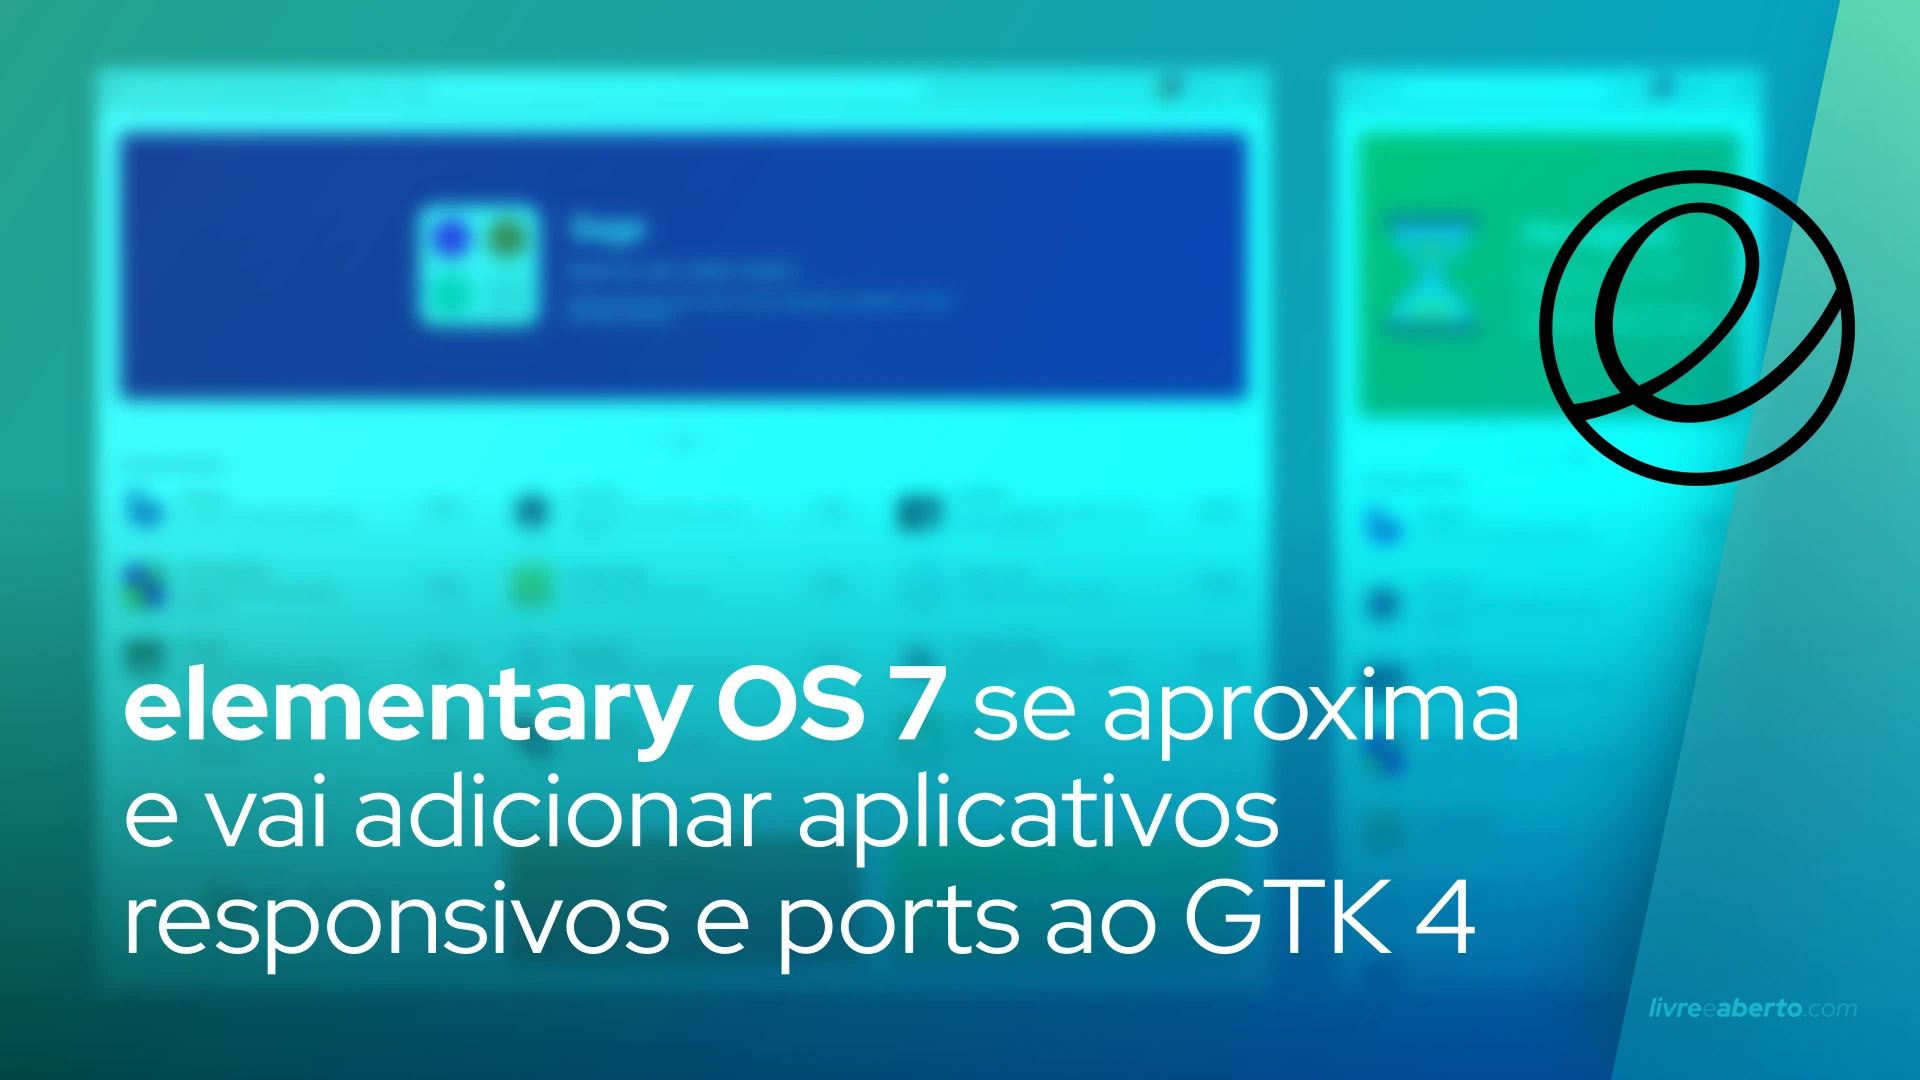 elementary OS 7 se aproxima e vai adicionar aplicativos responsivos e ports ao GTK 4